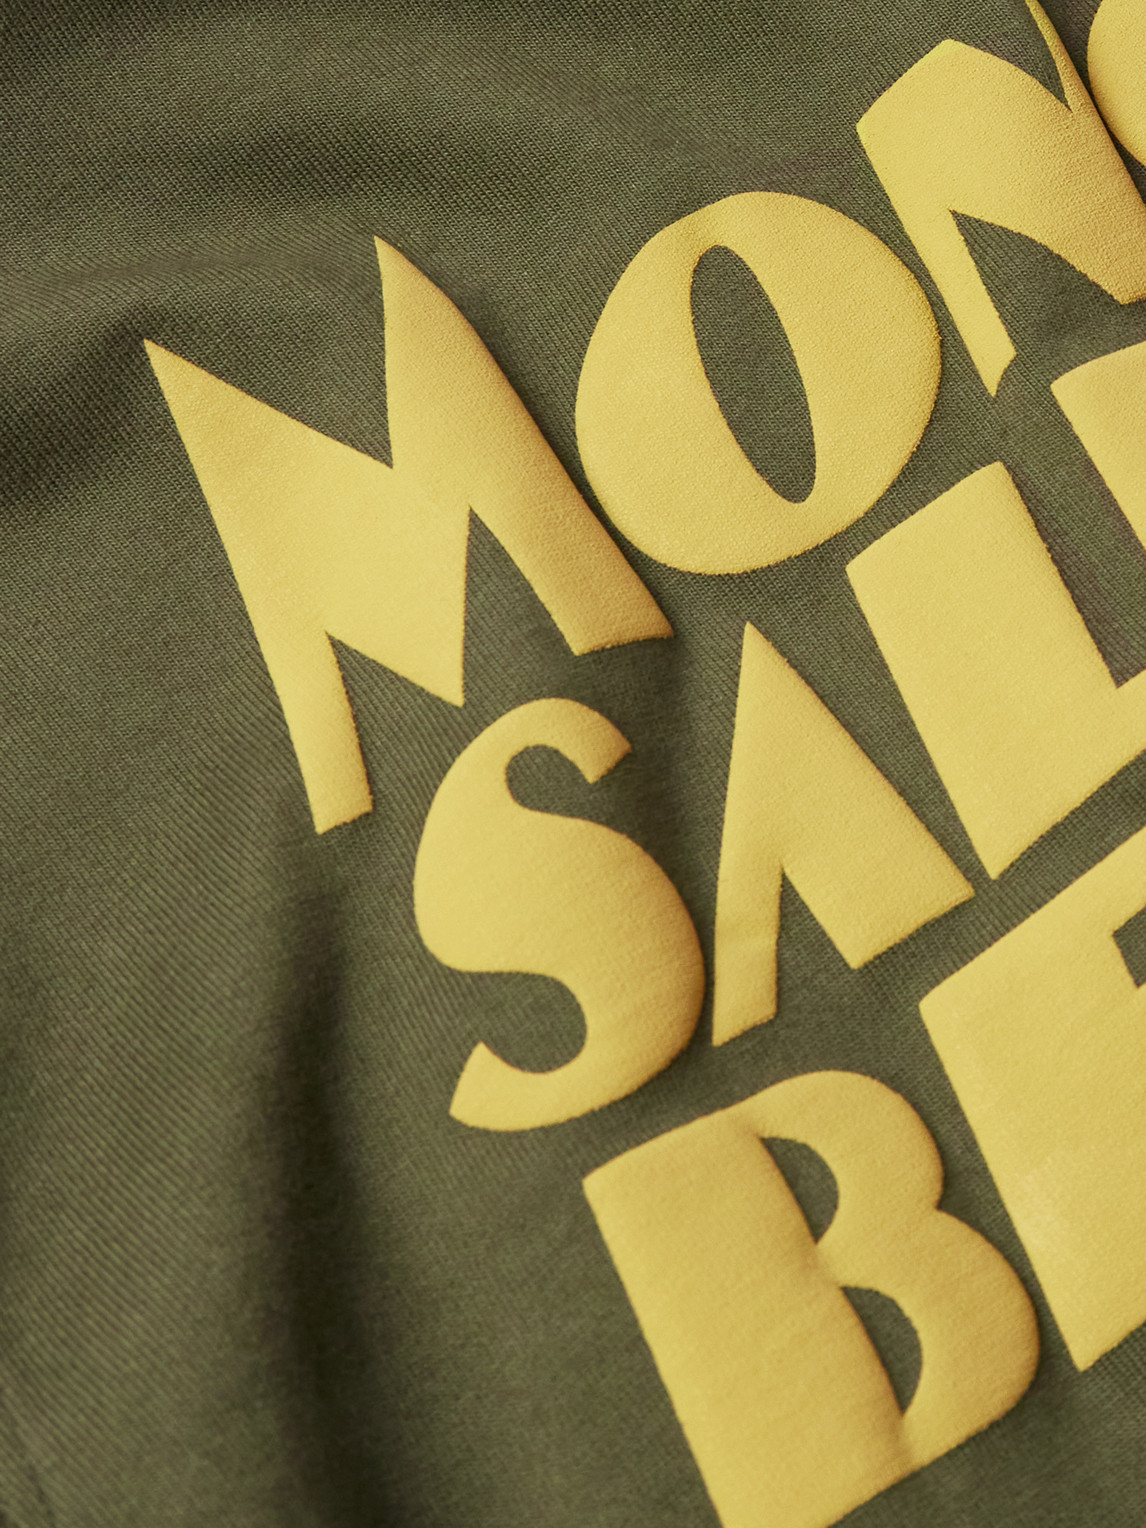 Shop Moncler Genius Salehe Bembury Logo-print Cotton-jersey T-shirt In Green